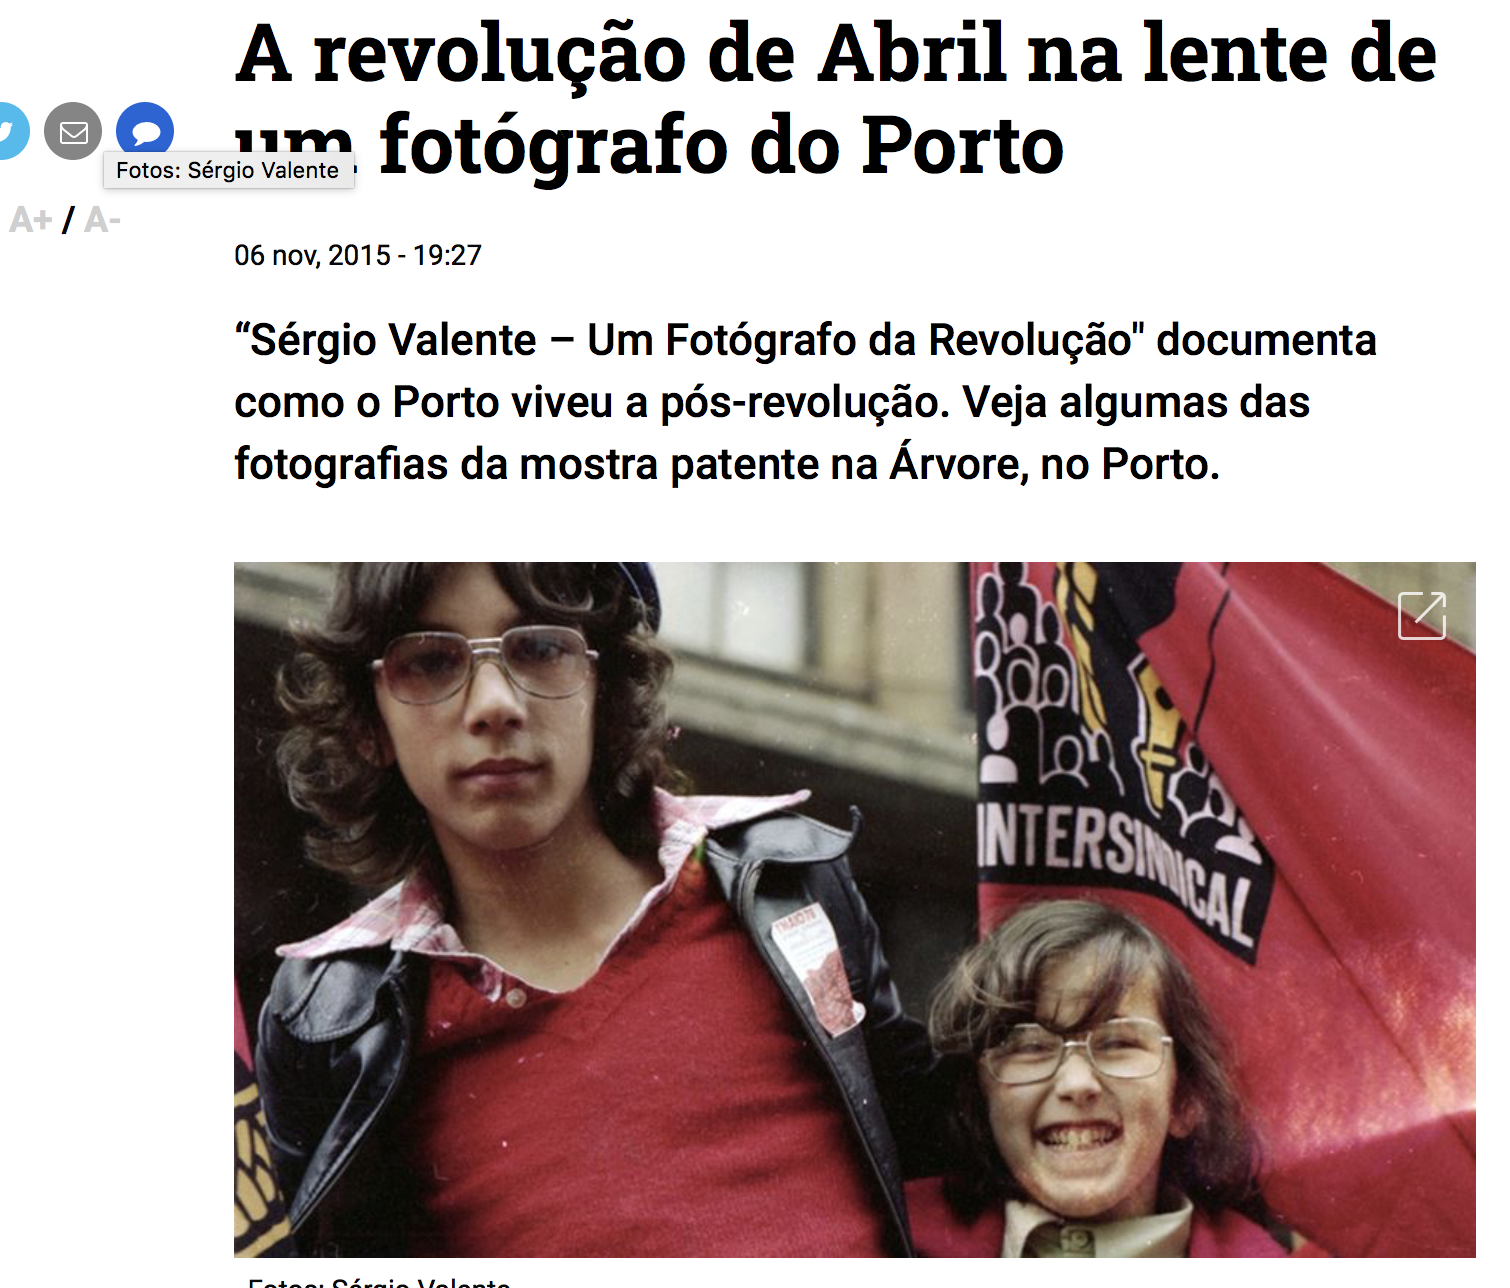 "A revolução de Abril na lente de um fotógrafo do Porto"